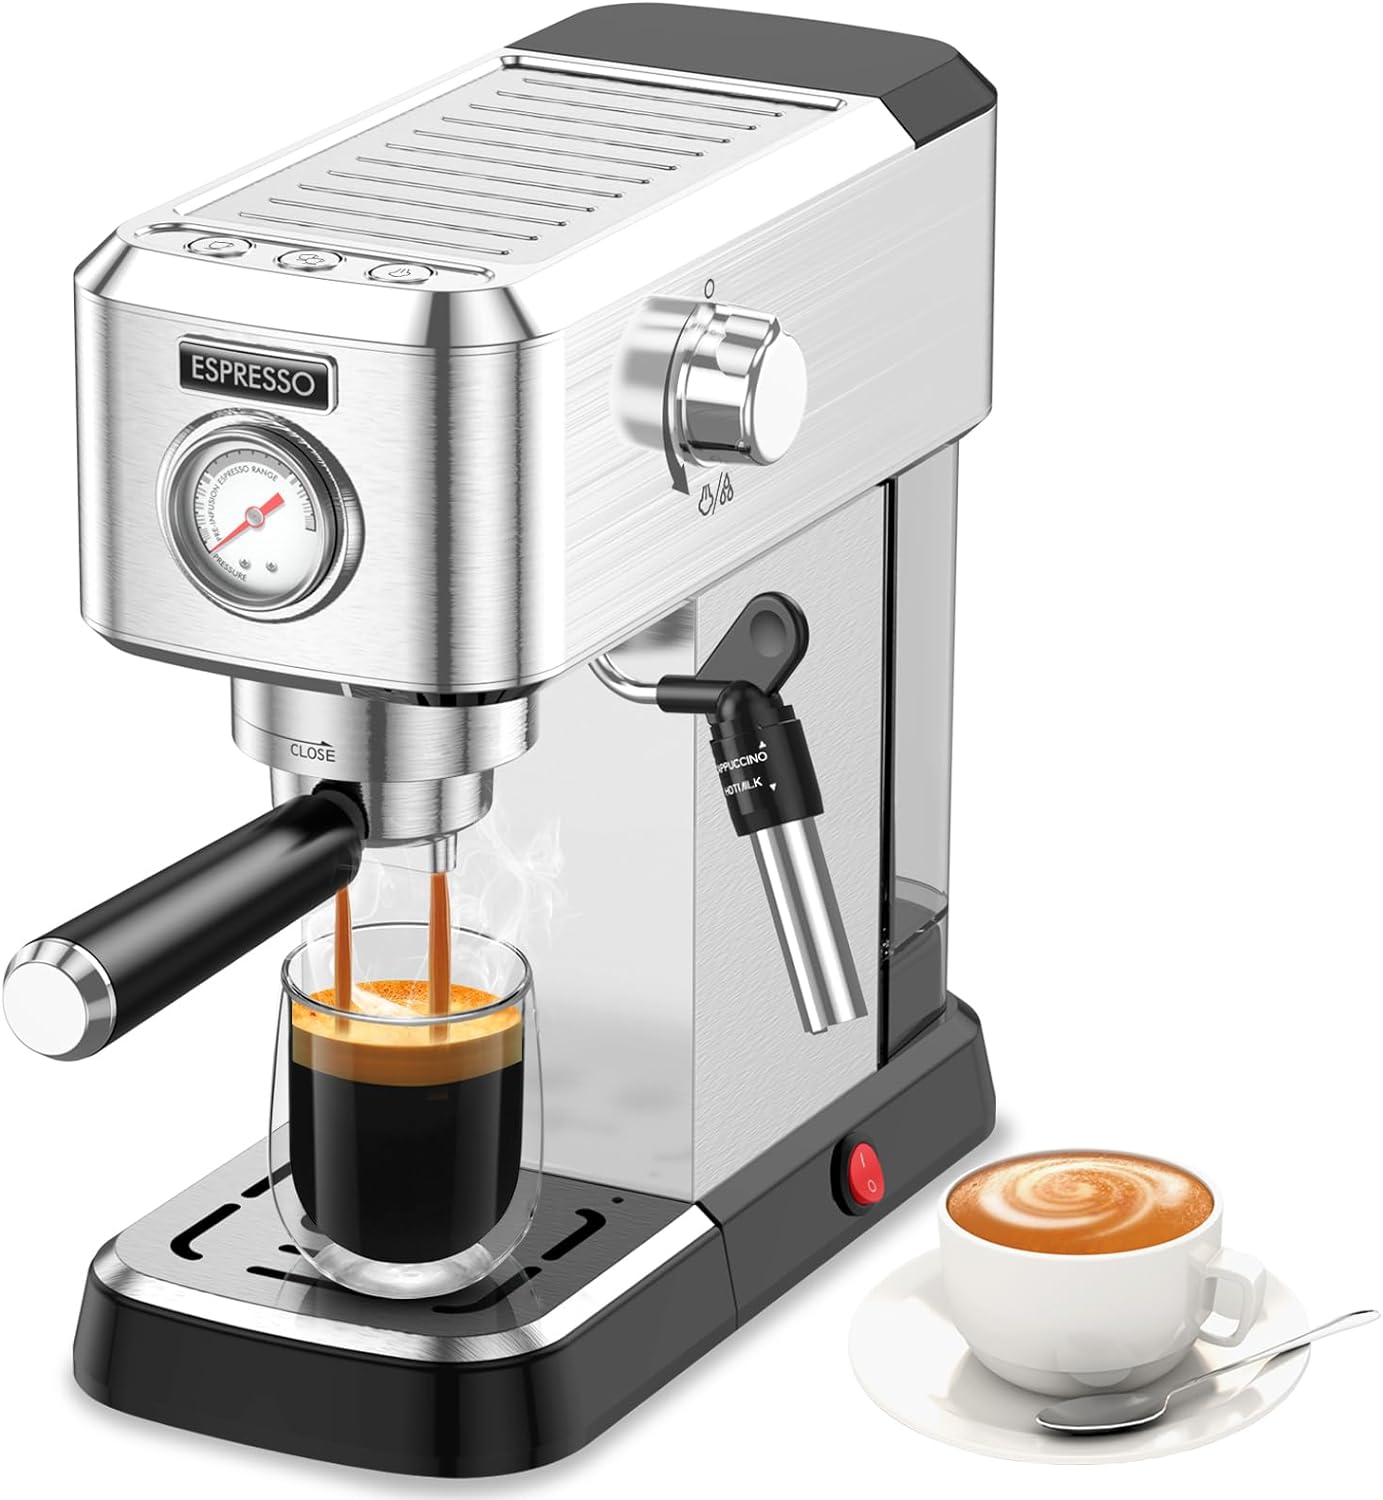 Cercisu Espresso Machine Review